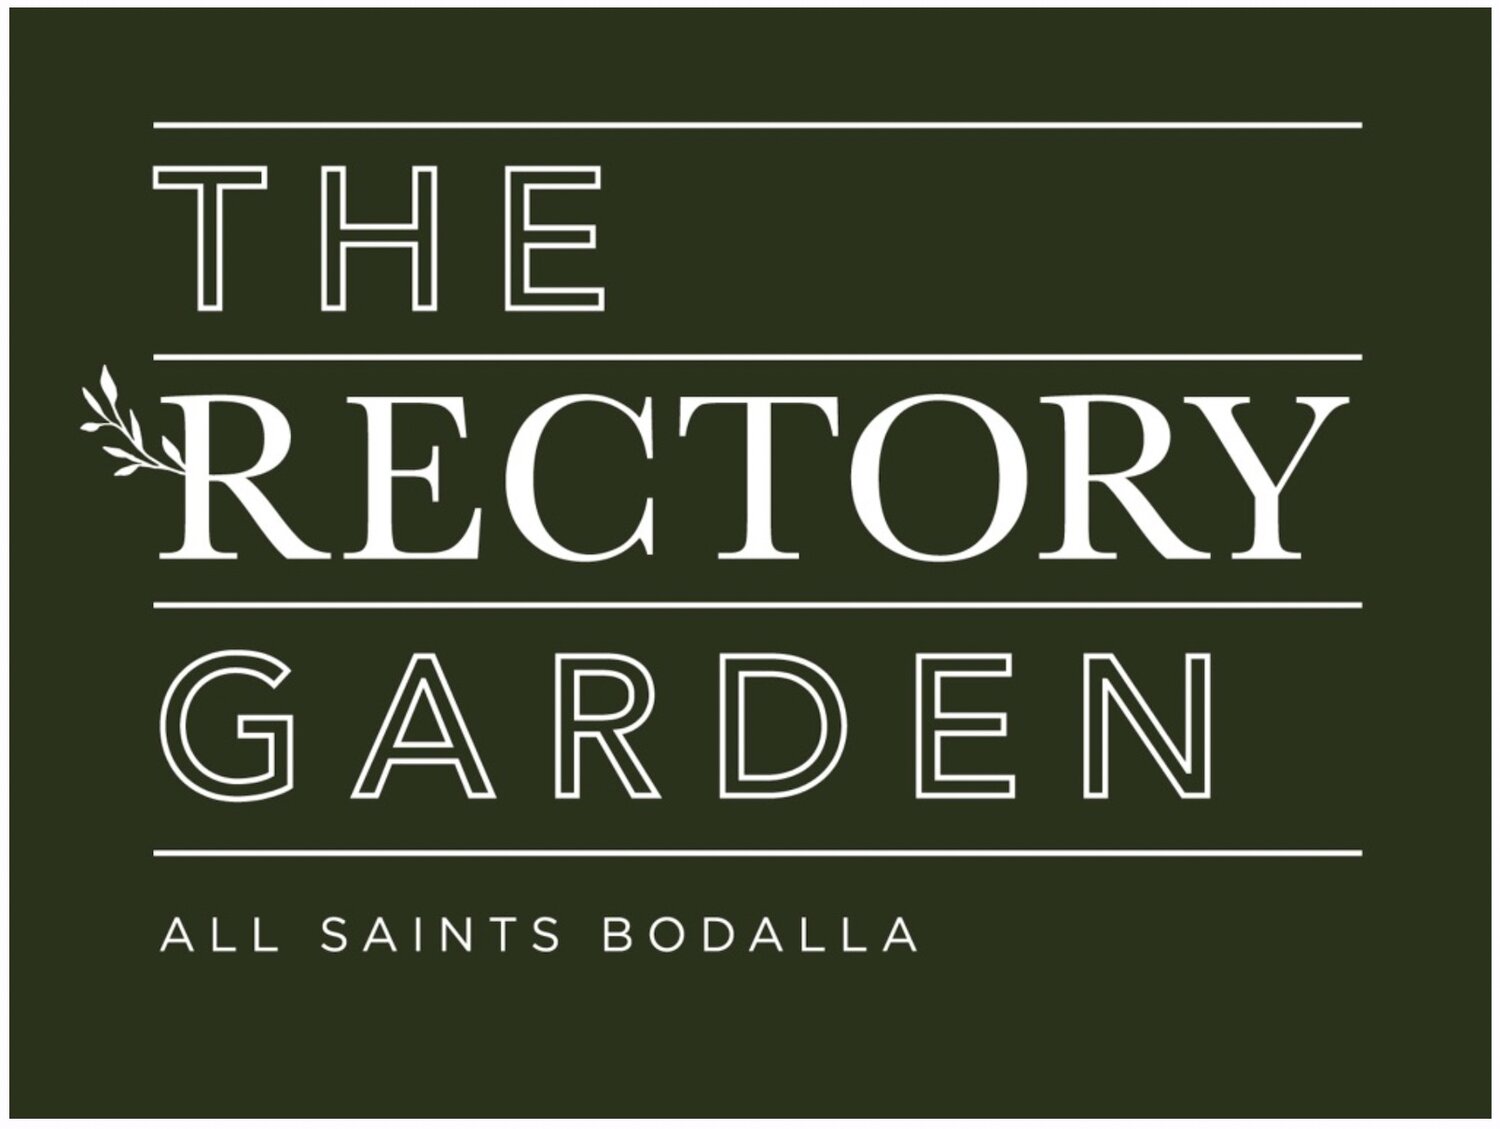 The Rectory Garden, All Saints Bodalla